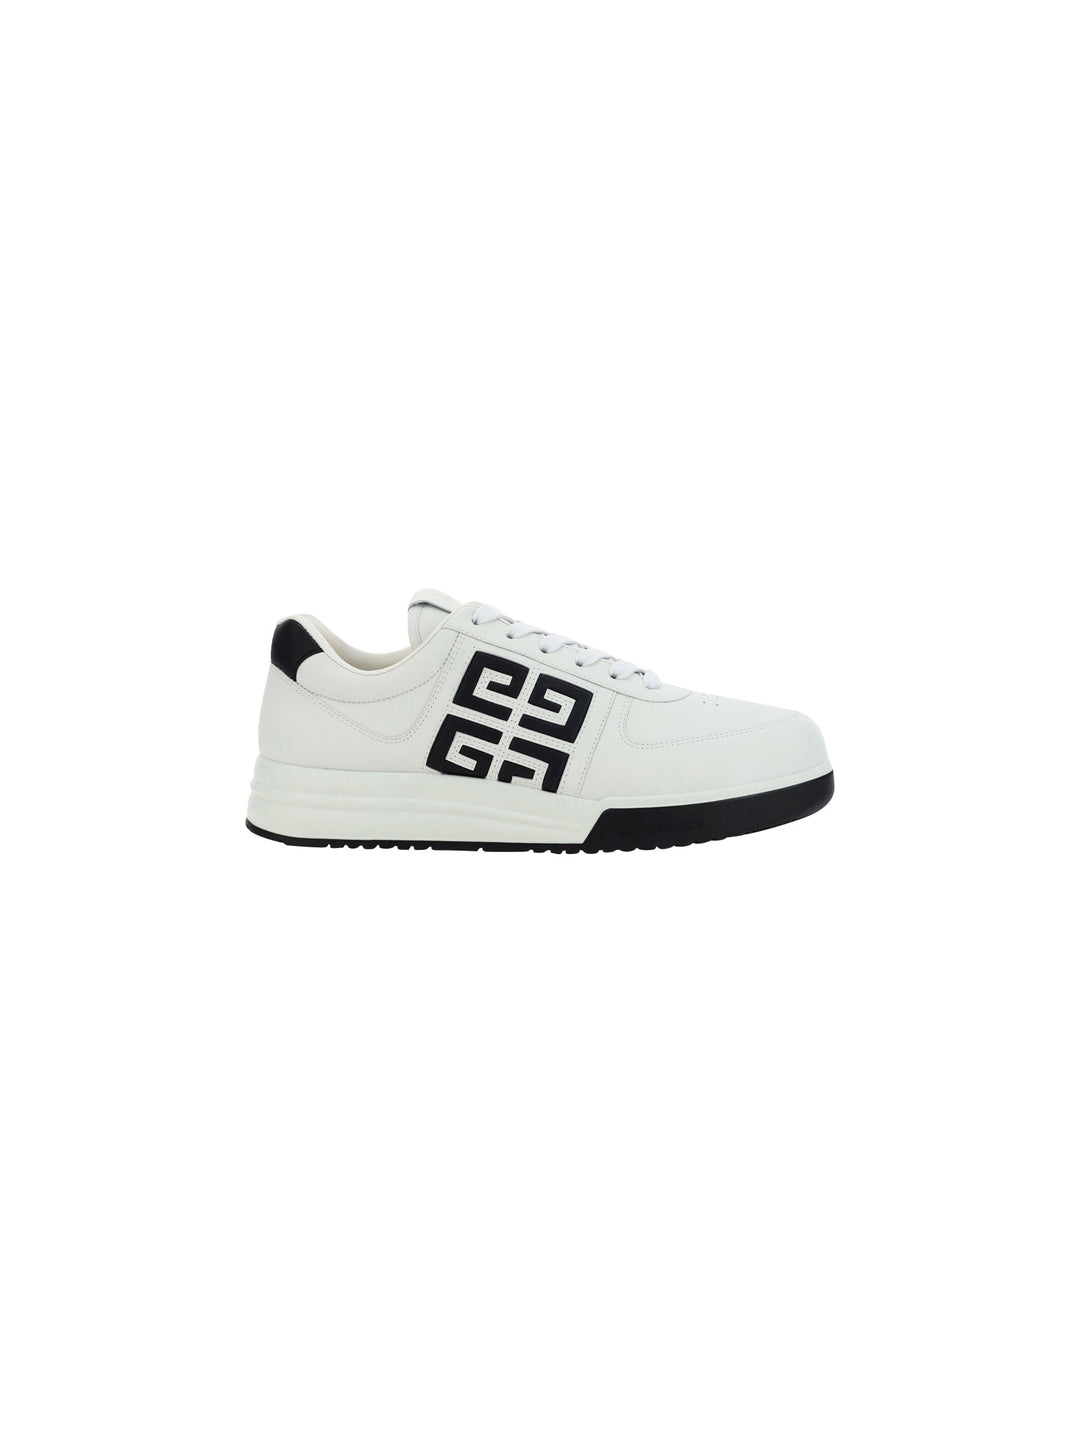 Sneakers G4